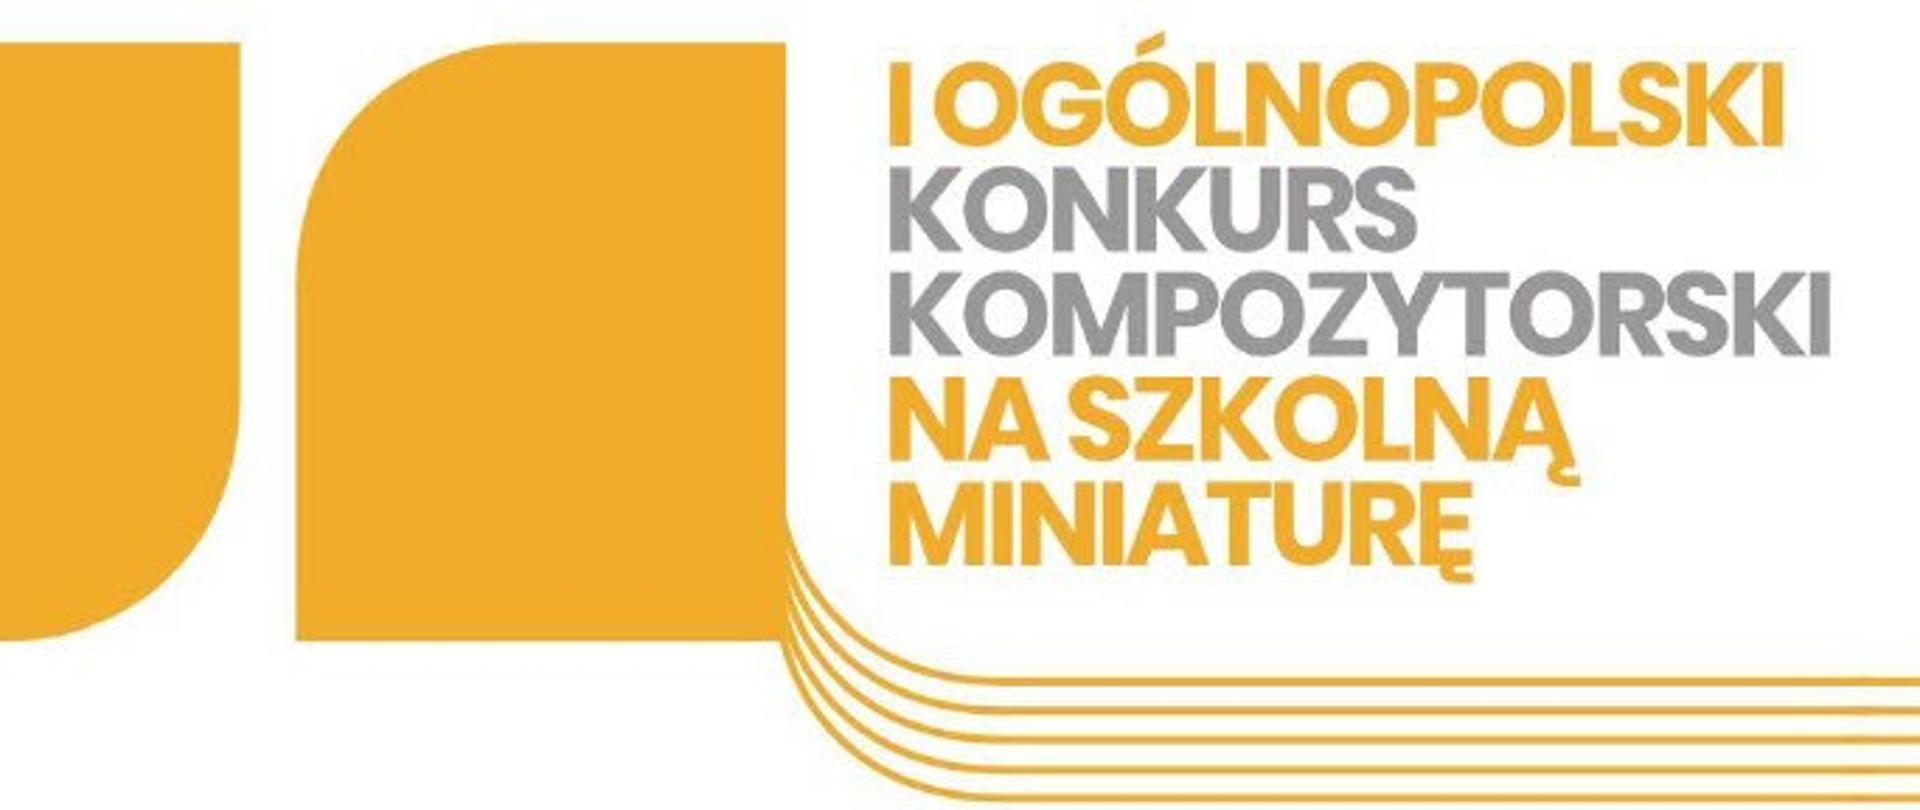 Żółte logo na białym tle z napisem pierwszy OGOLNOPOLSKI KONKURS KOMPOZYTORSKI.